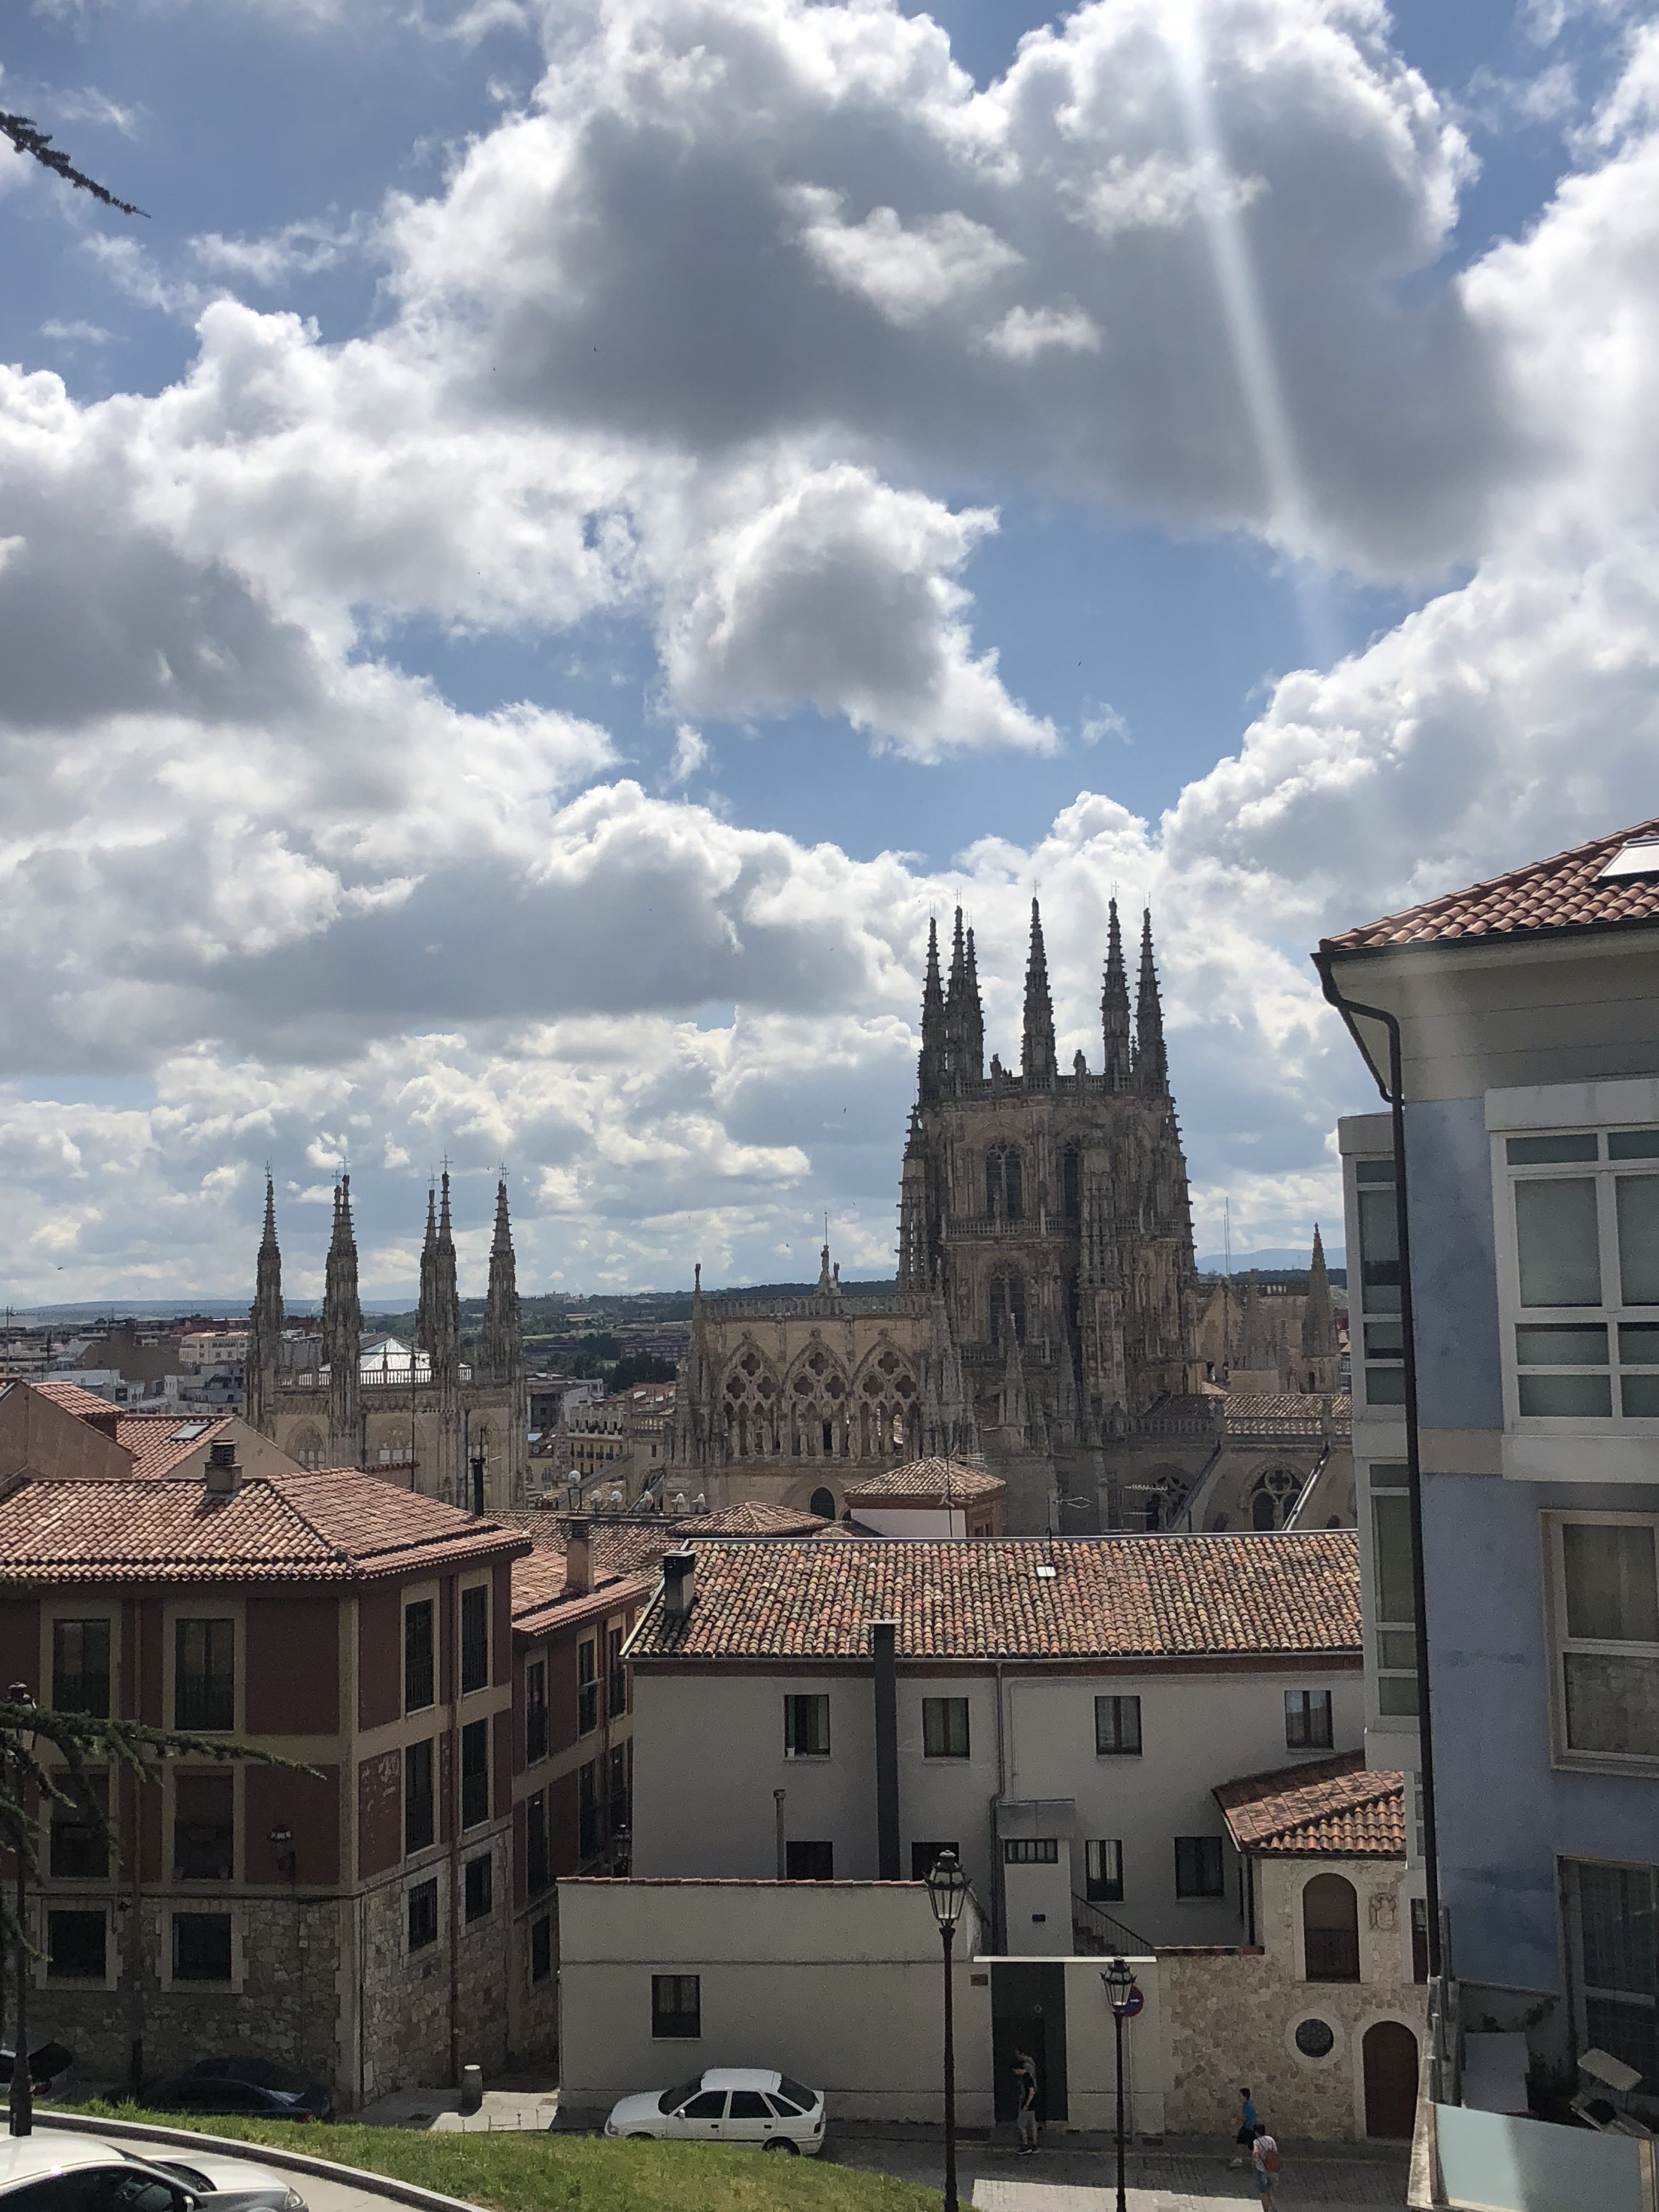 Day 16 – Burgos